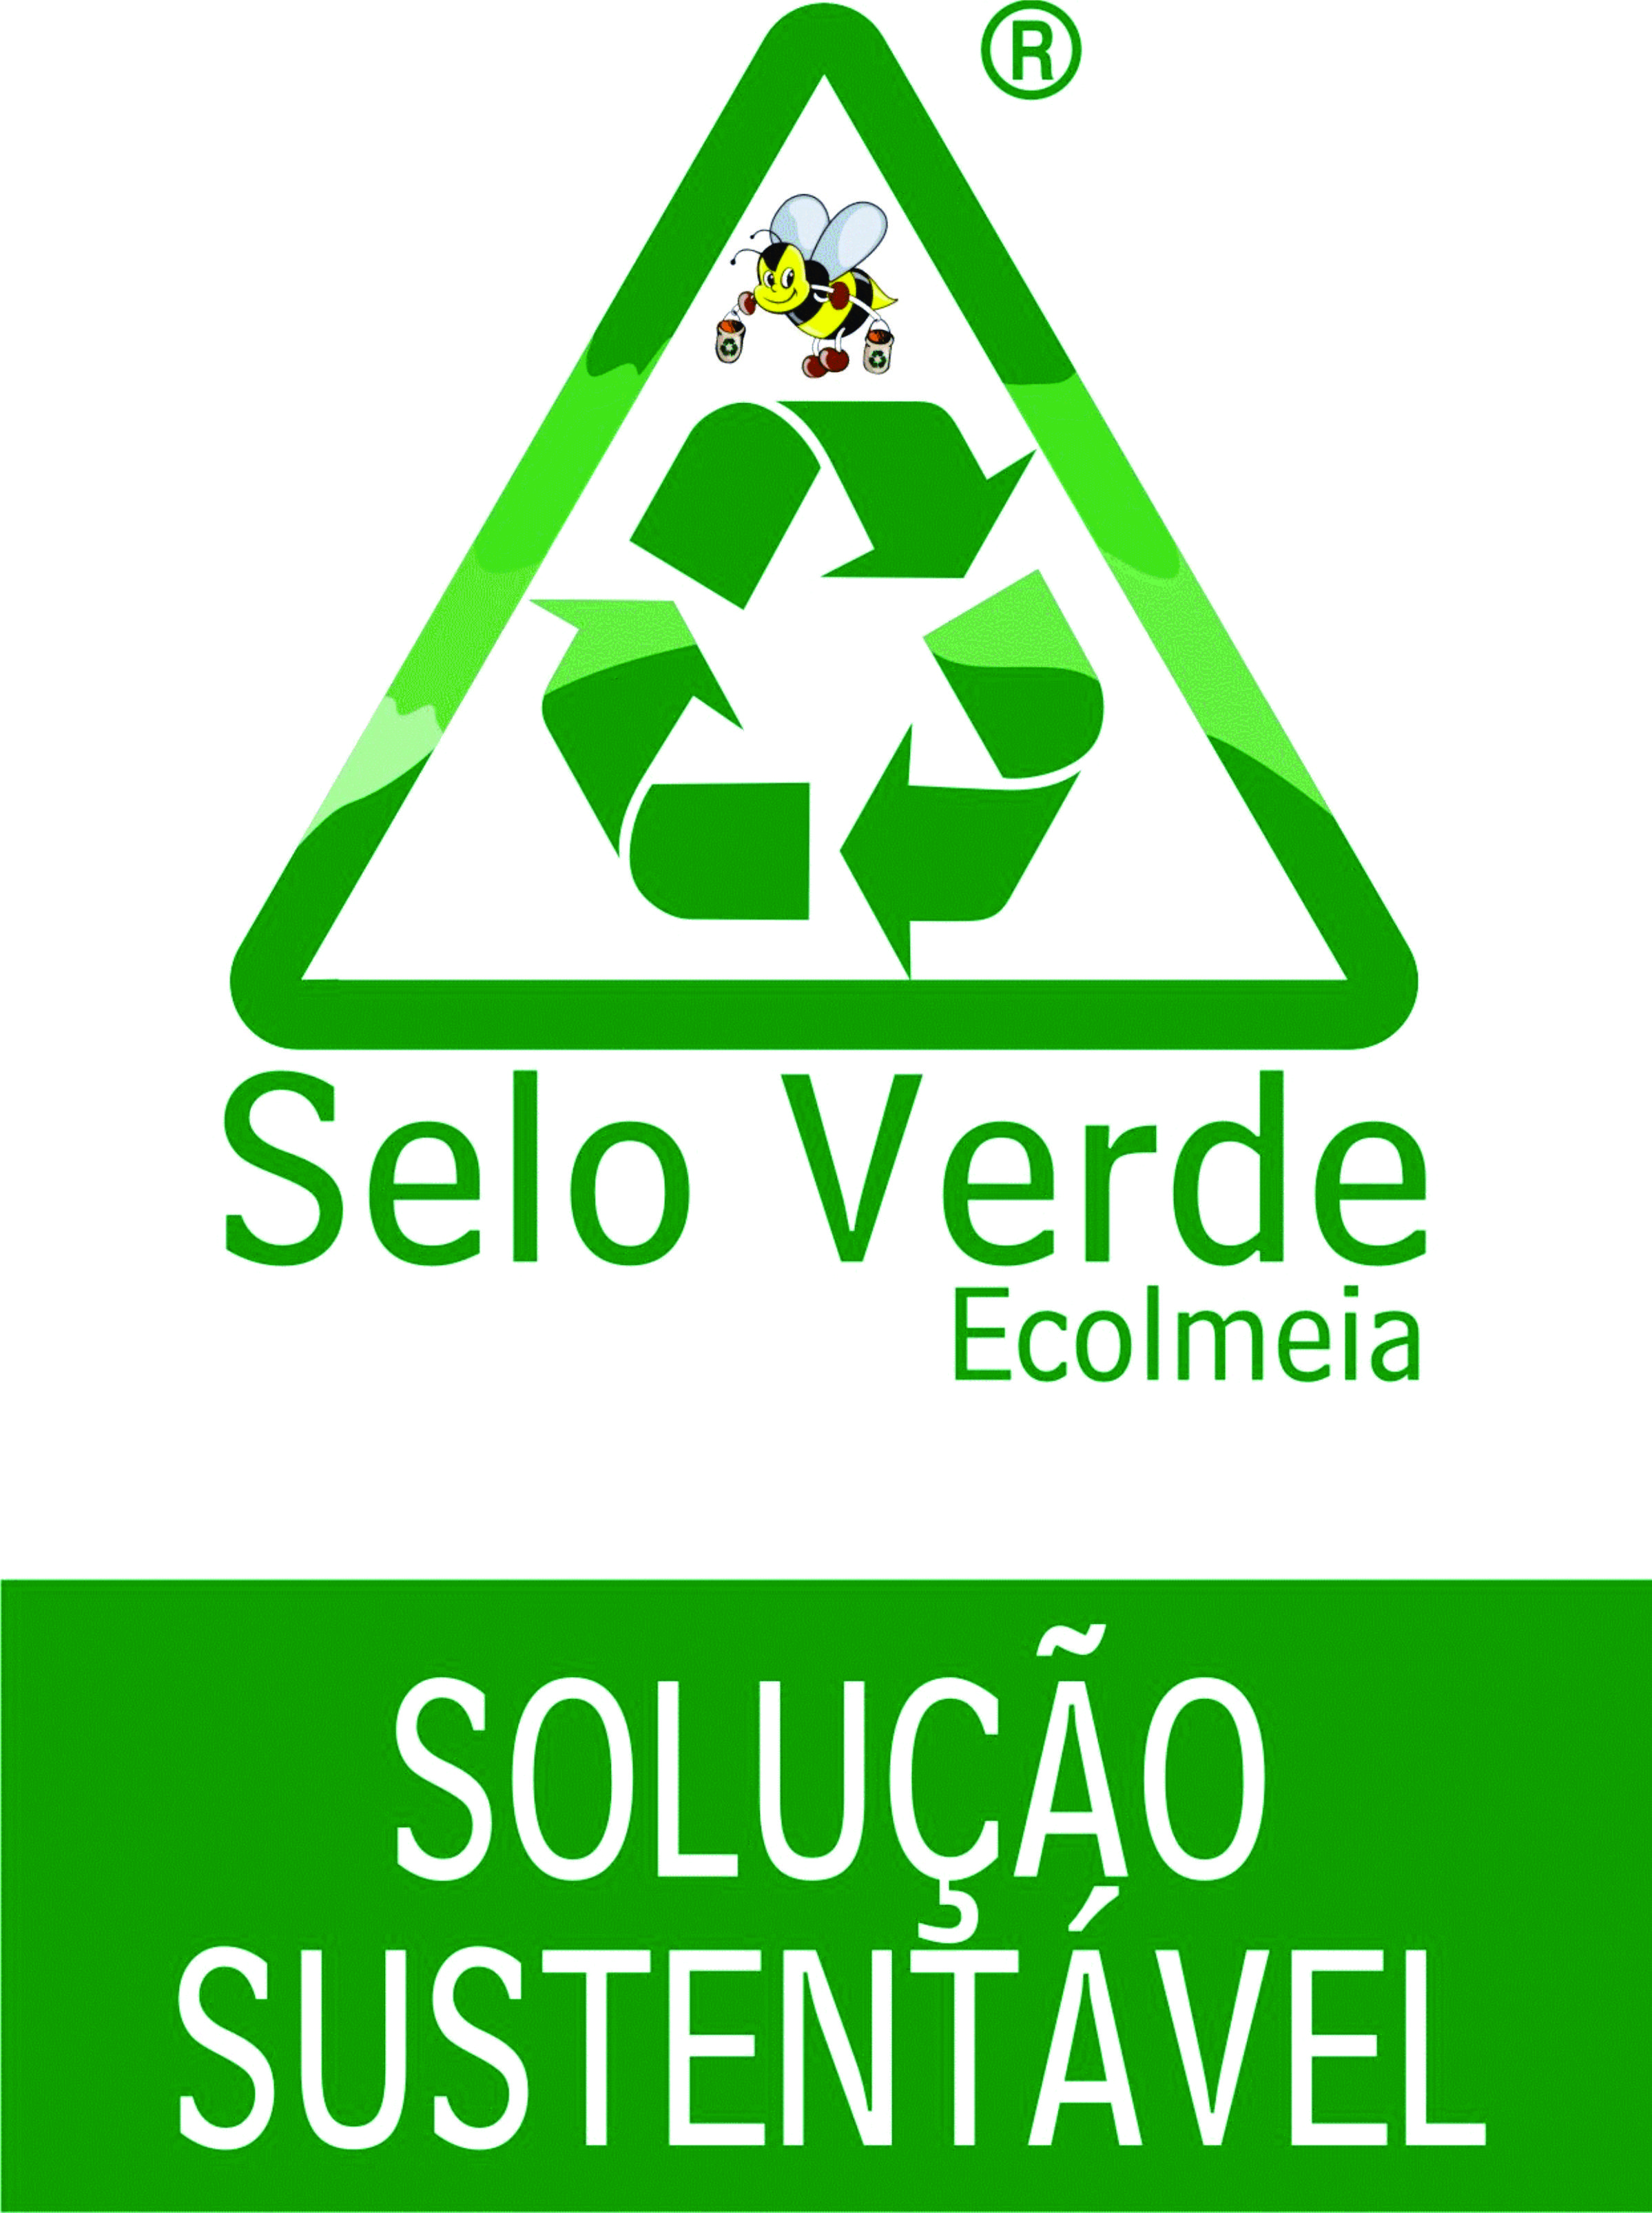 Solução Sustentável Selo Verde Ecolmeia